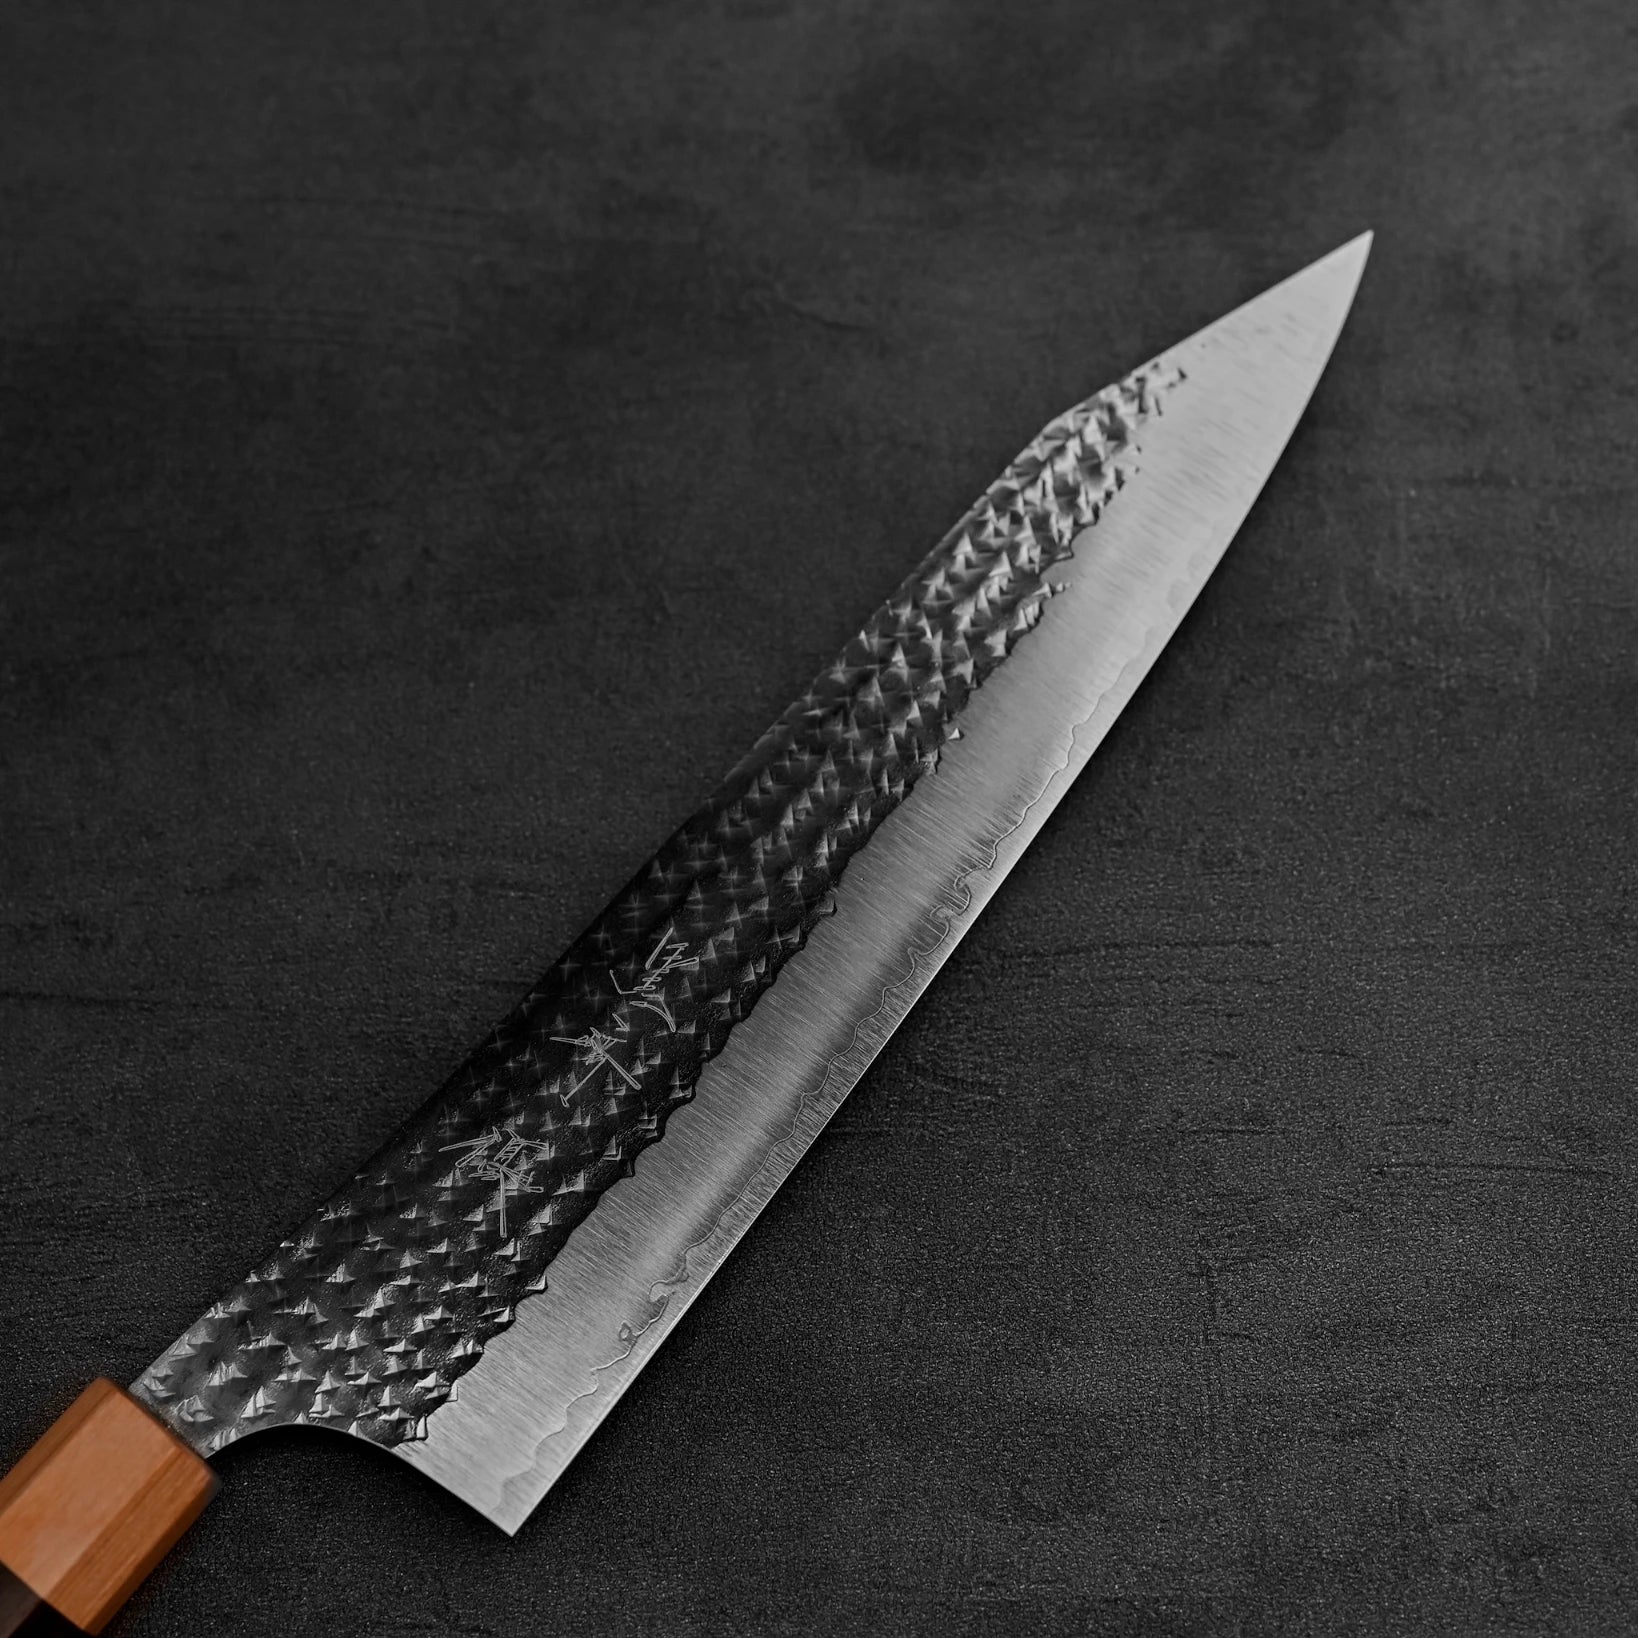 Close up view of the blade of Yu Kurosaki Senko SG2 gyuto knife